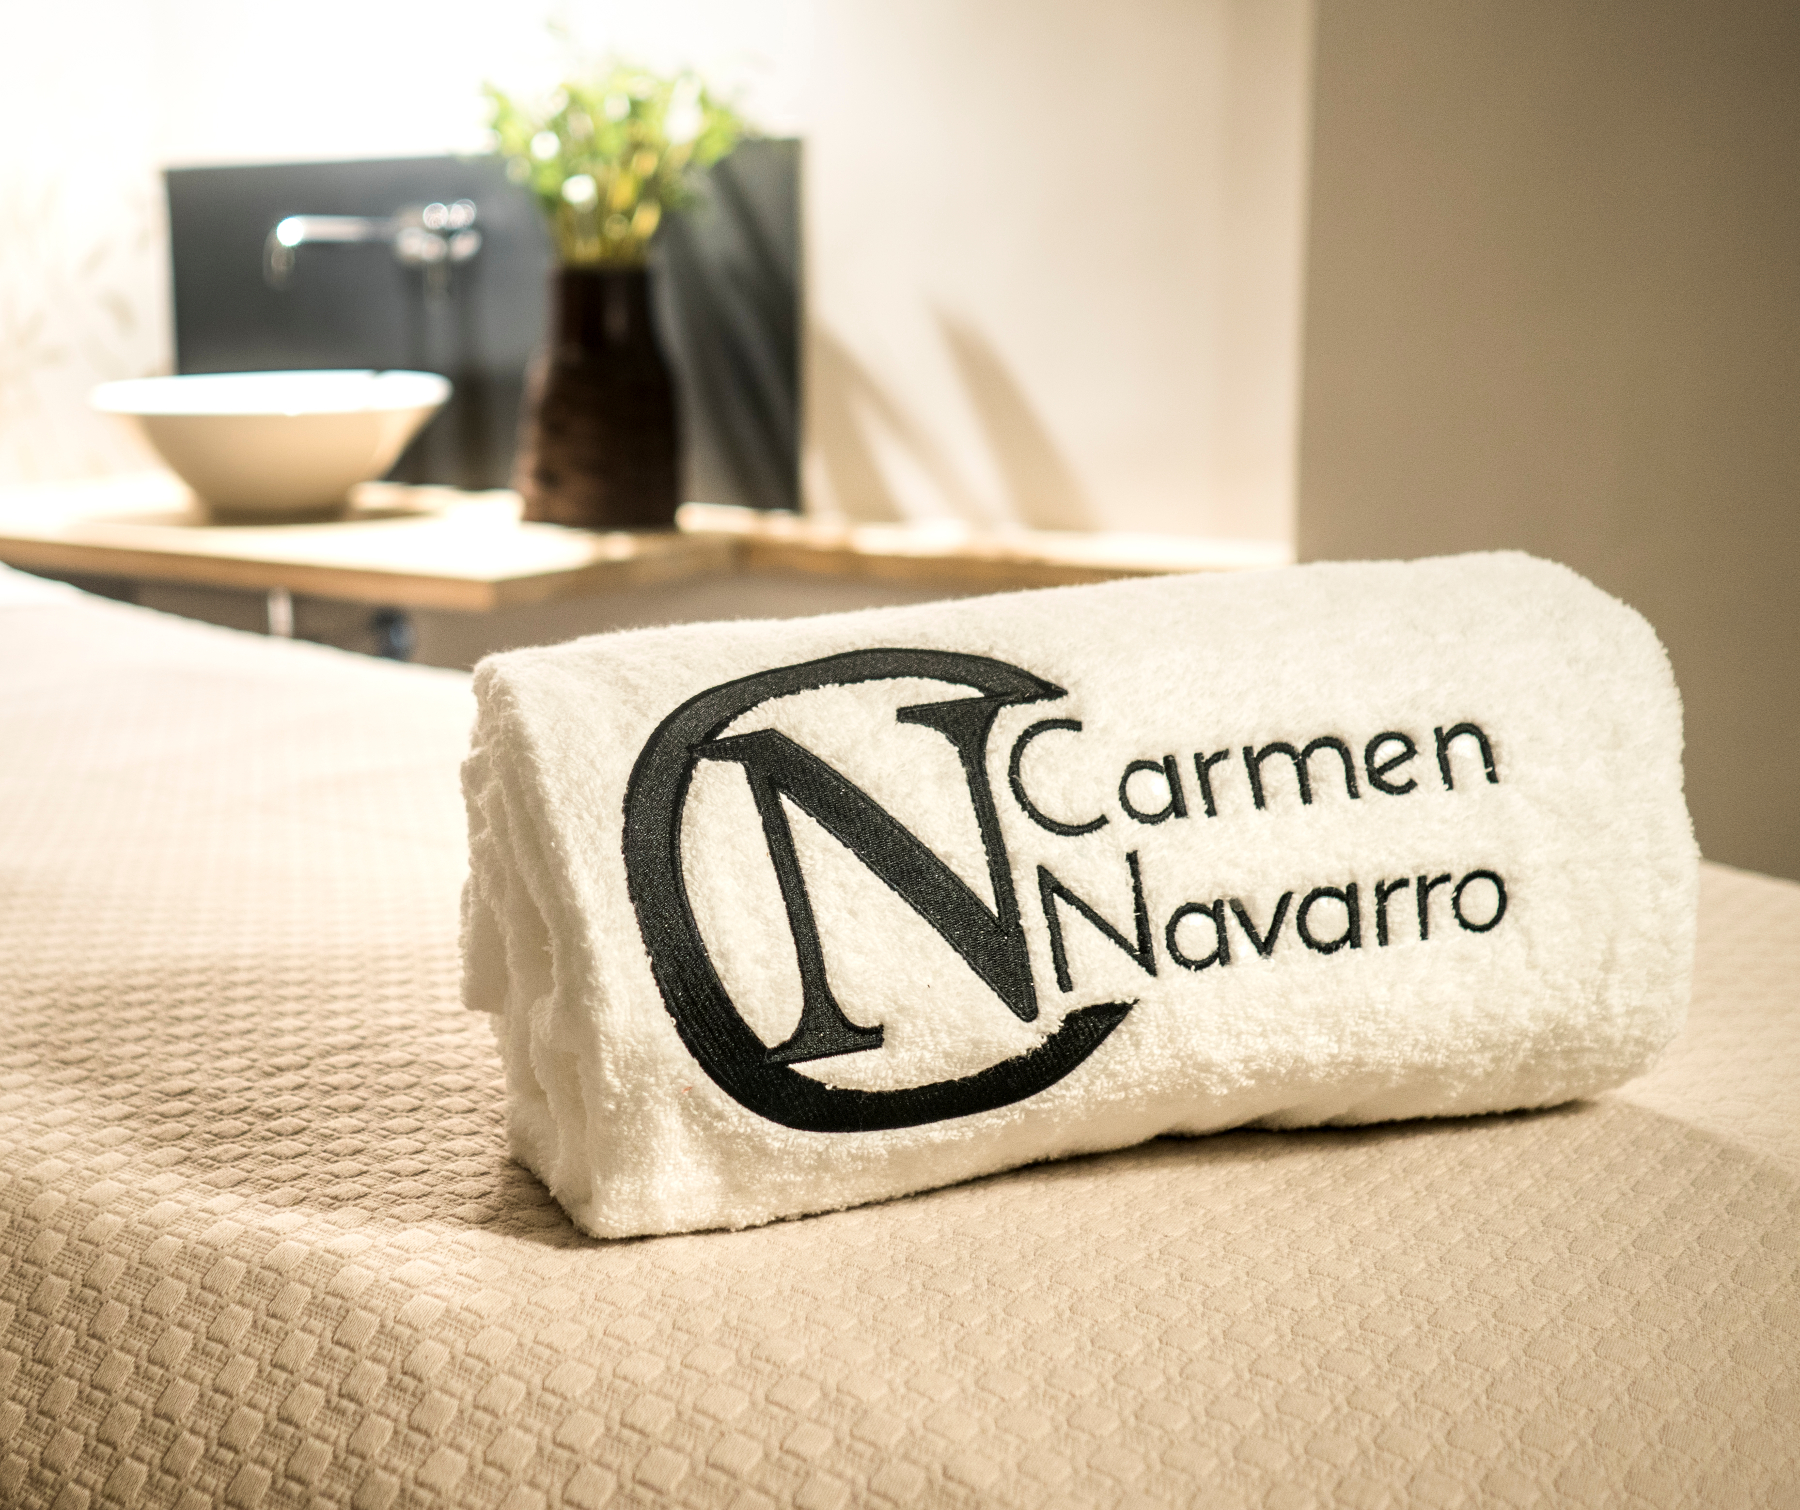 Carmen Navarro: «Para ofrecerle a mis clientes lo mejor, nunca he dejado de formarme»